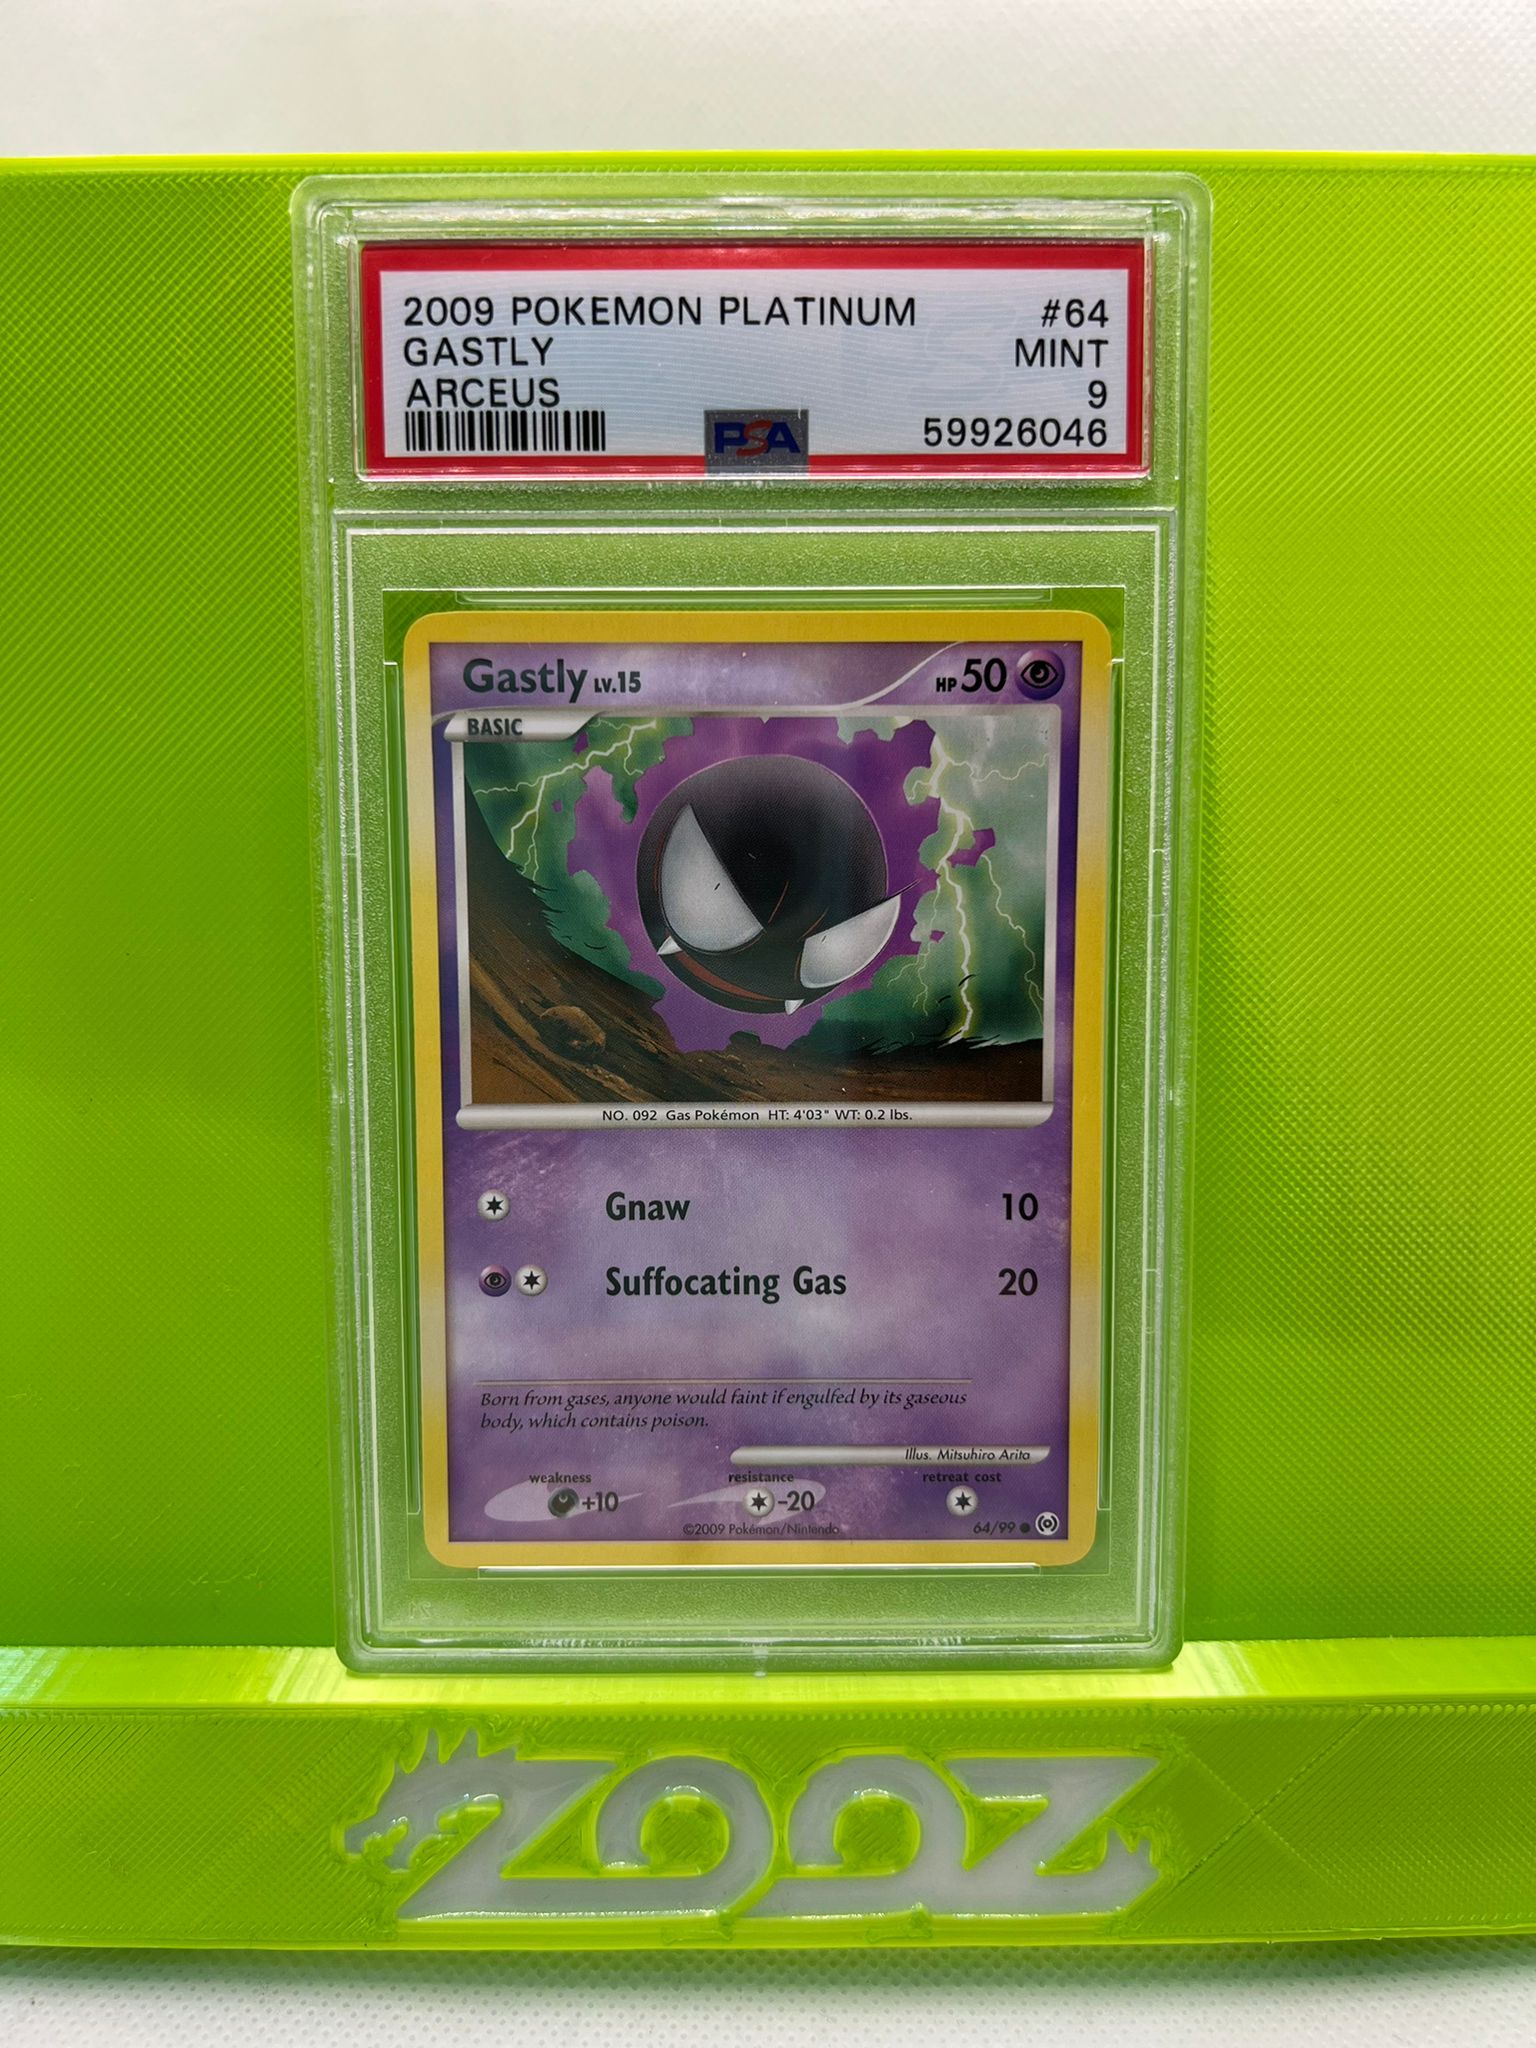 PSA 9 Pokemon Platinum Gastly #64 Arceus Non Holo